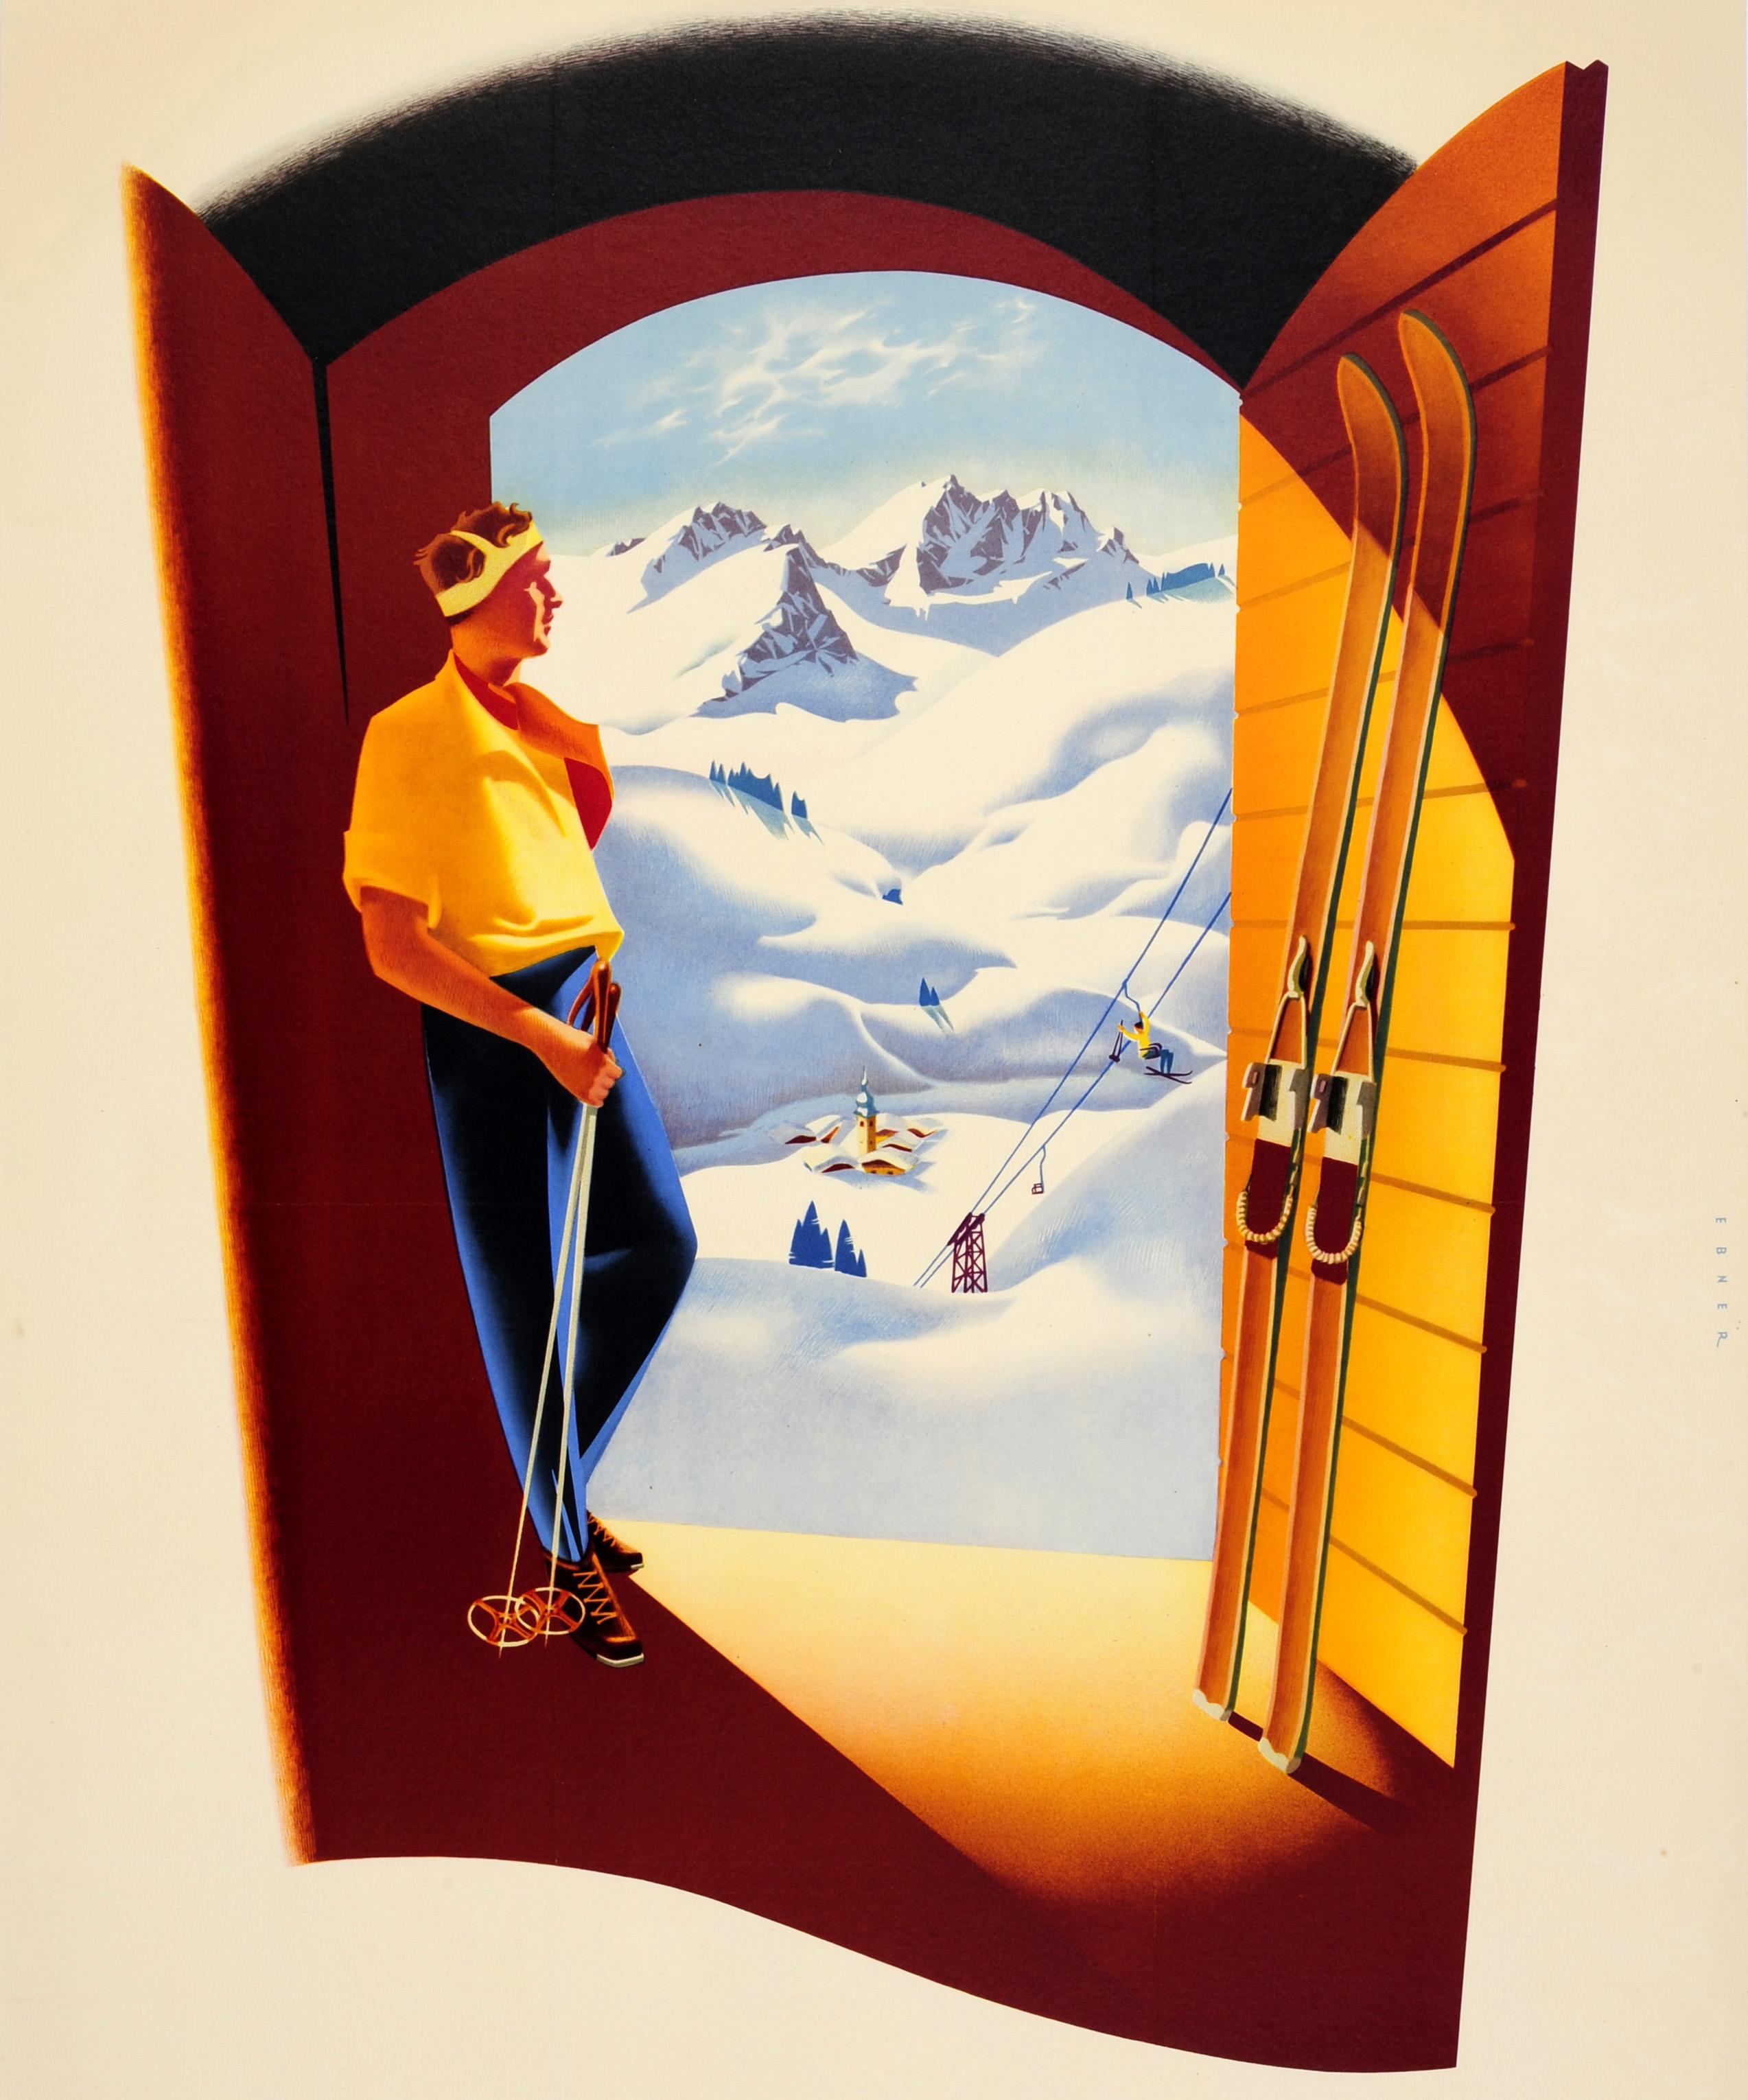 Original Vintage-Reise- und Wintersportplakat für Österreich mit einem großartigen Bild eines Skifahrers, der sich mit seinen Skistöcken gegen eine Tür lehnt und auf die verschneiten Hänge und einen Skilift mit Berggipfeln in der Ferne blickt.